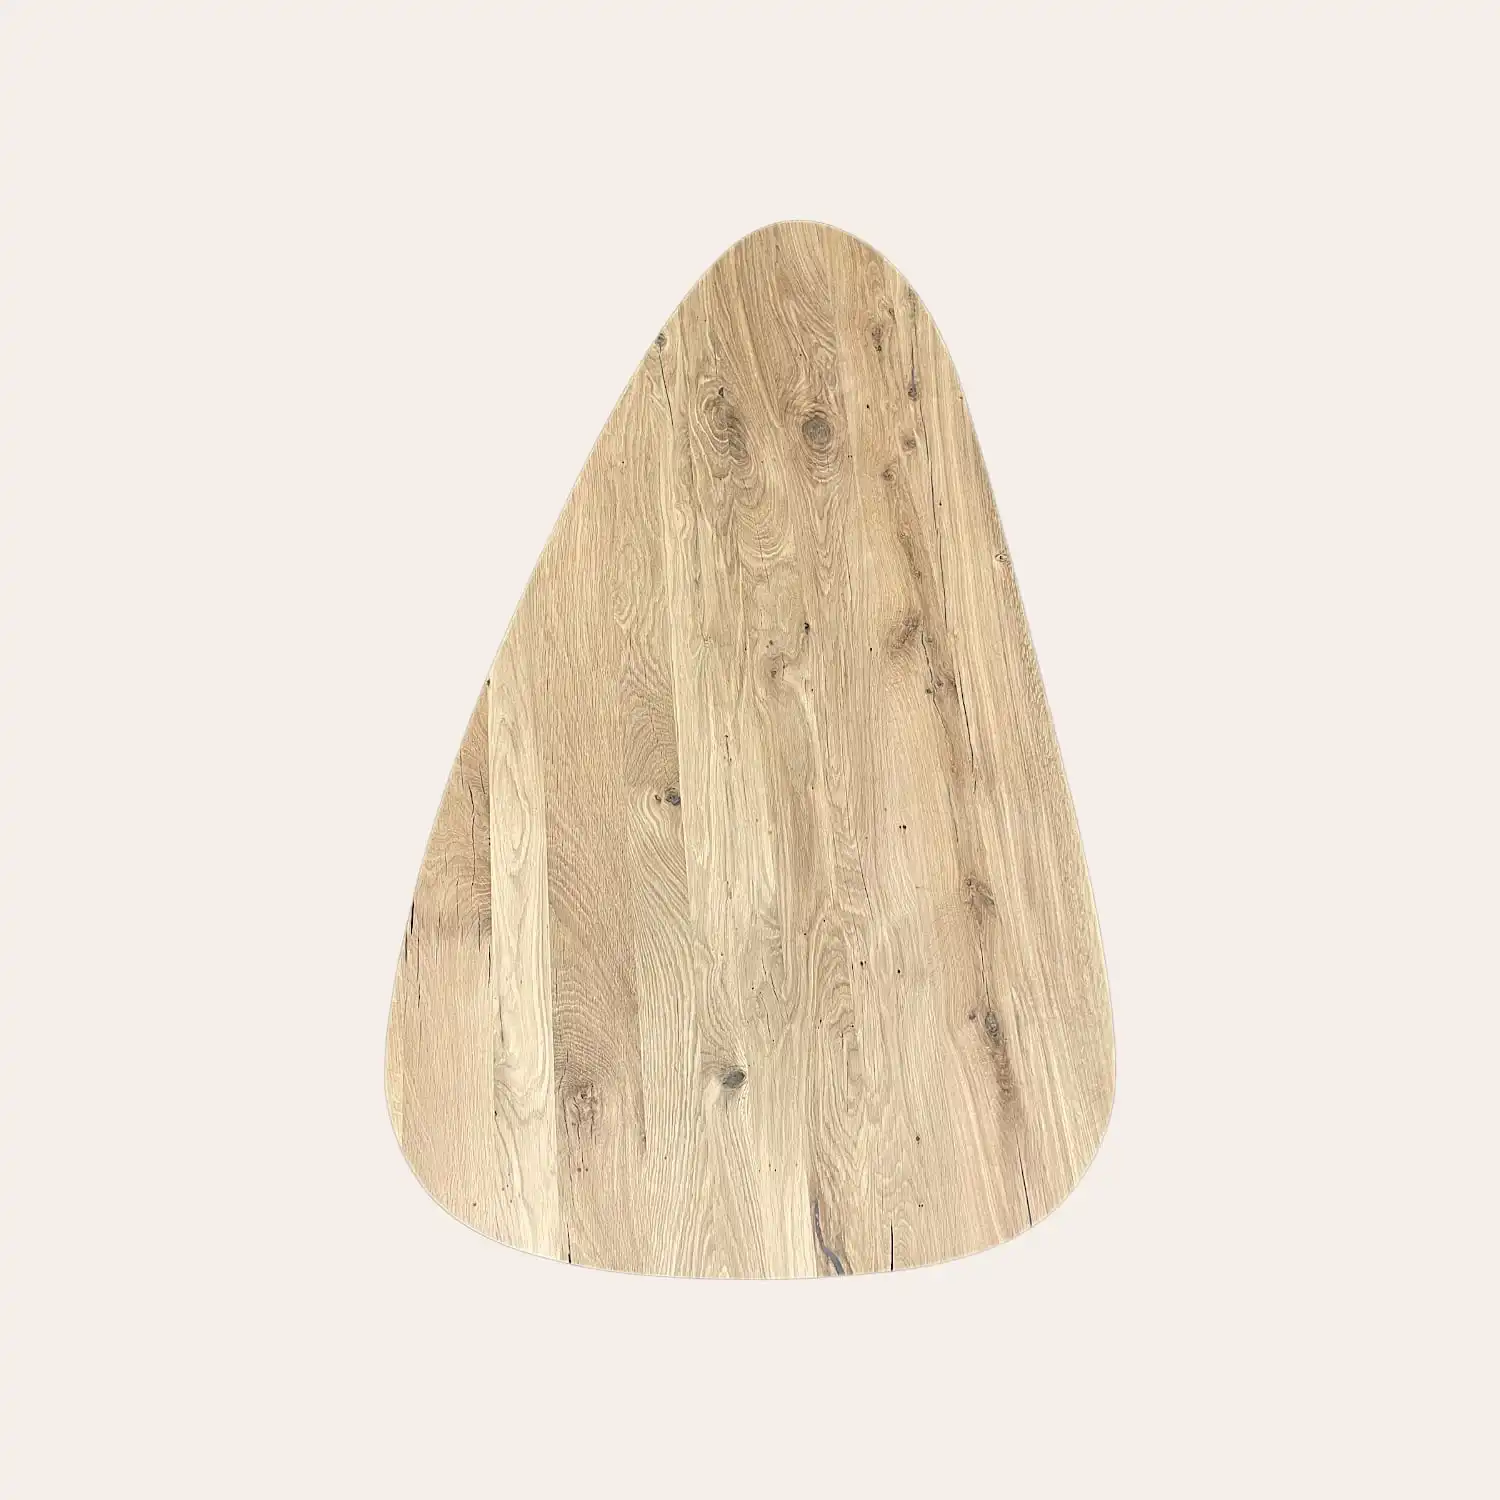  Un morceau de vieux bois en forme de triangle sur fond blanc. 